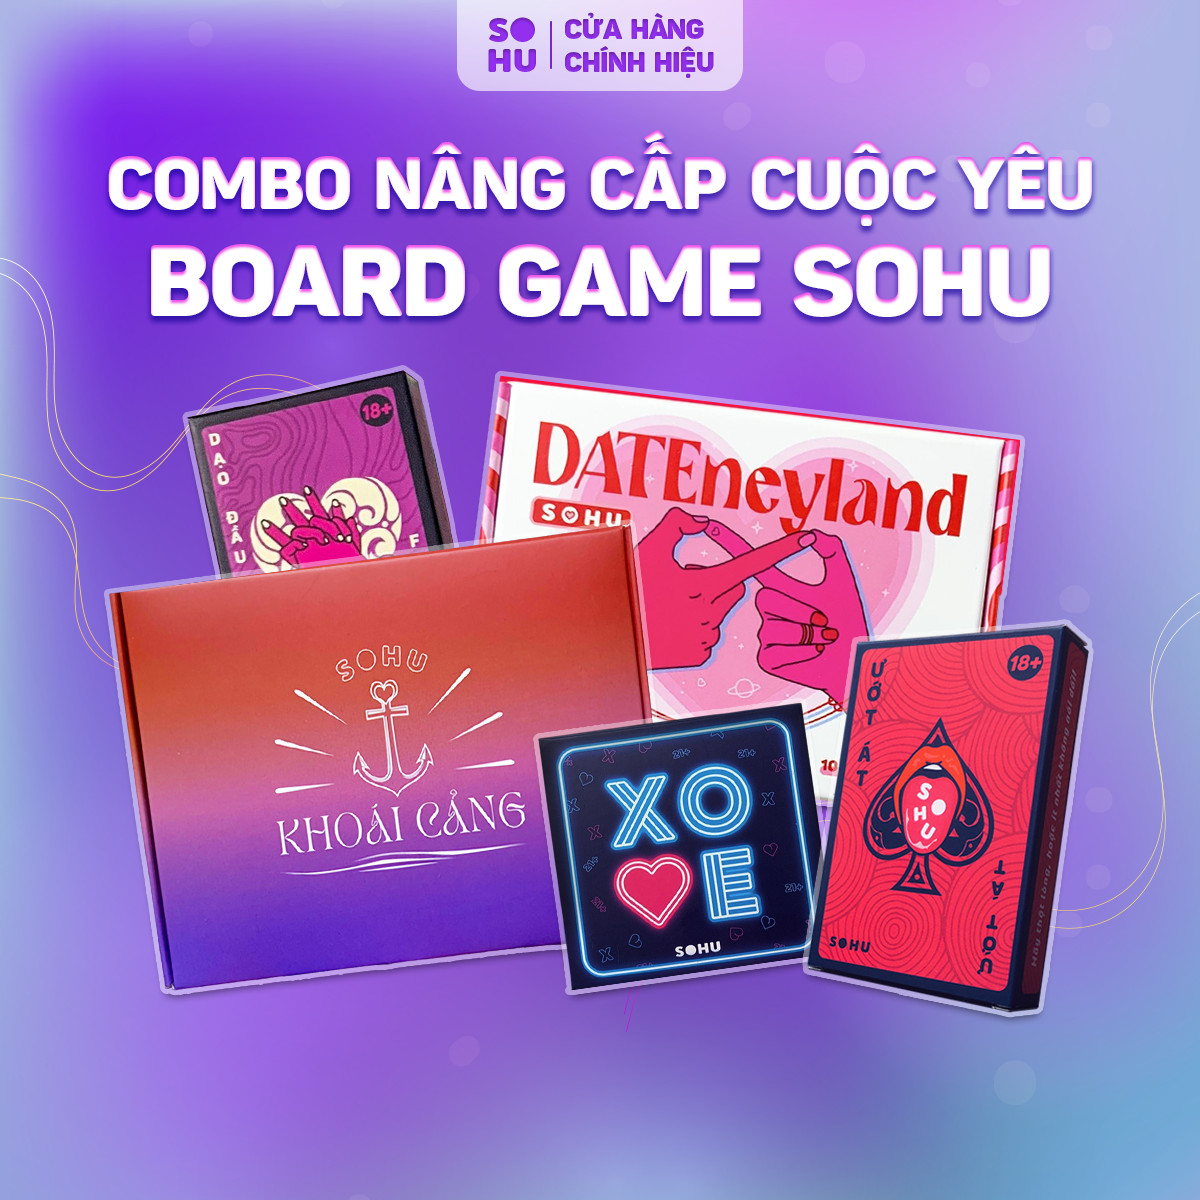 Combo board game nâng cấp cuộc tình của Sohu Hà Nội bao gồm game date